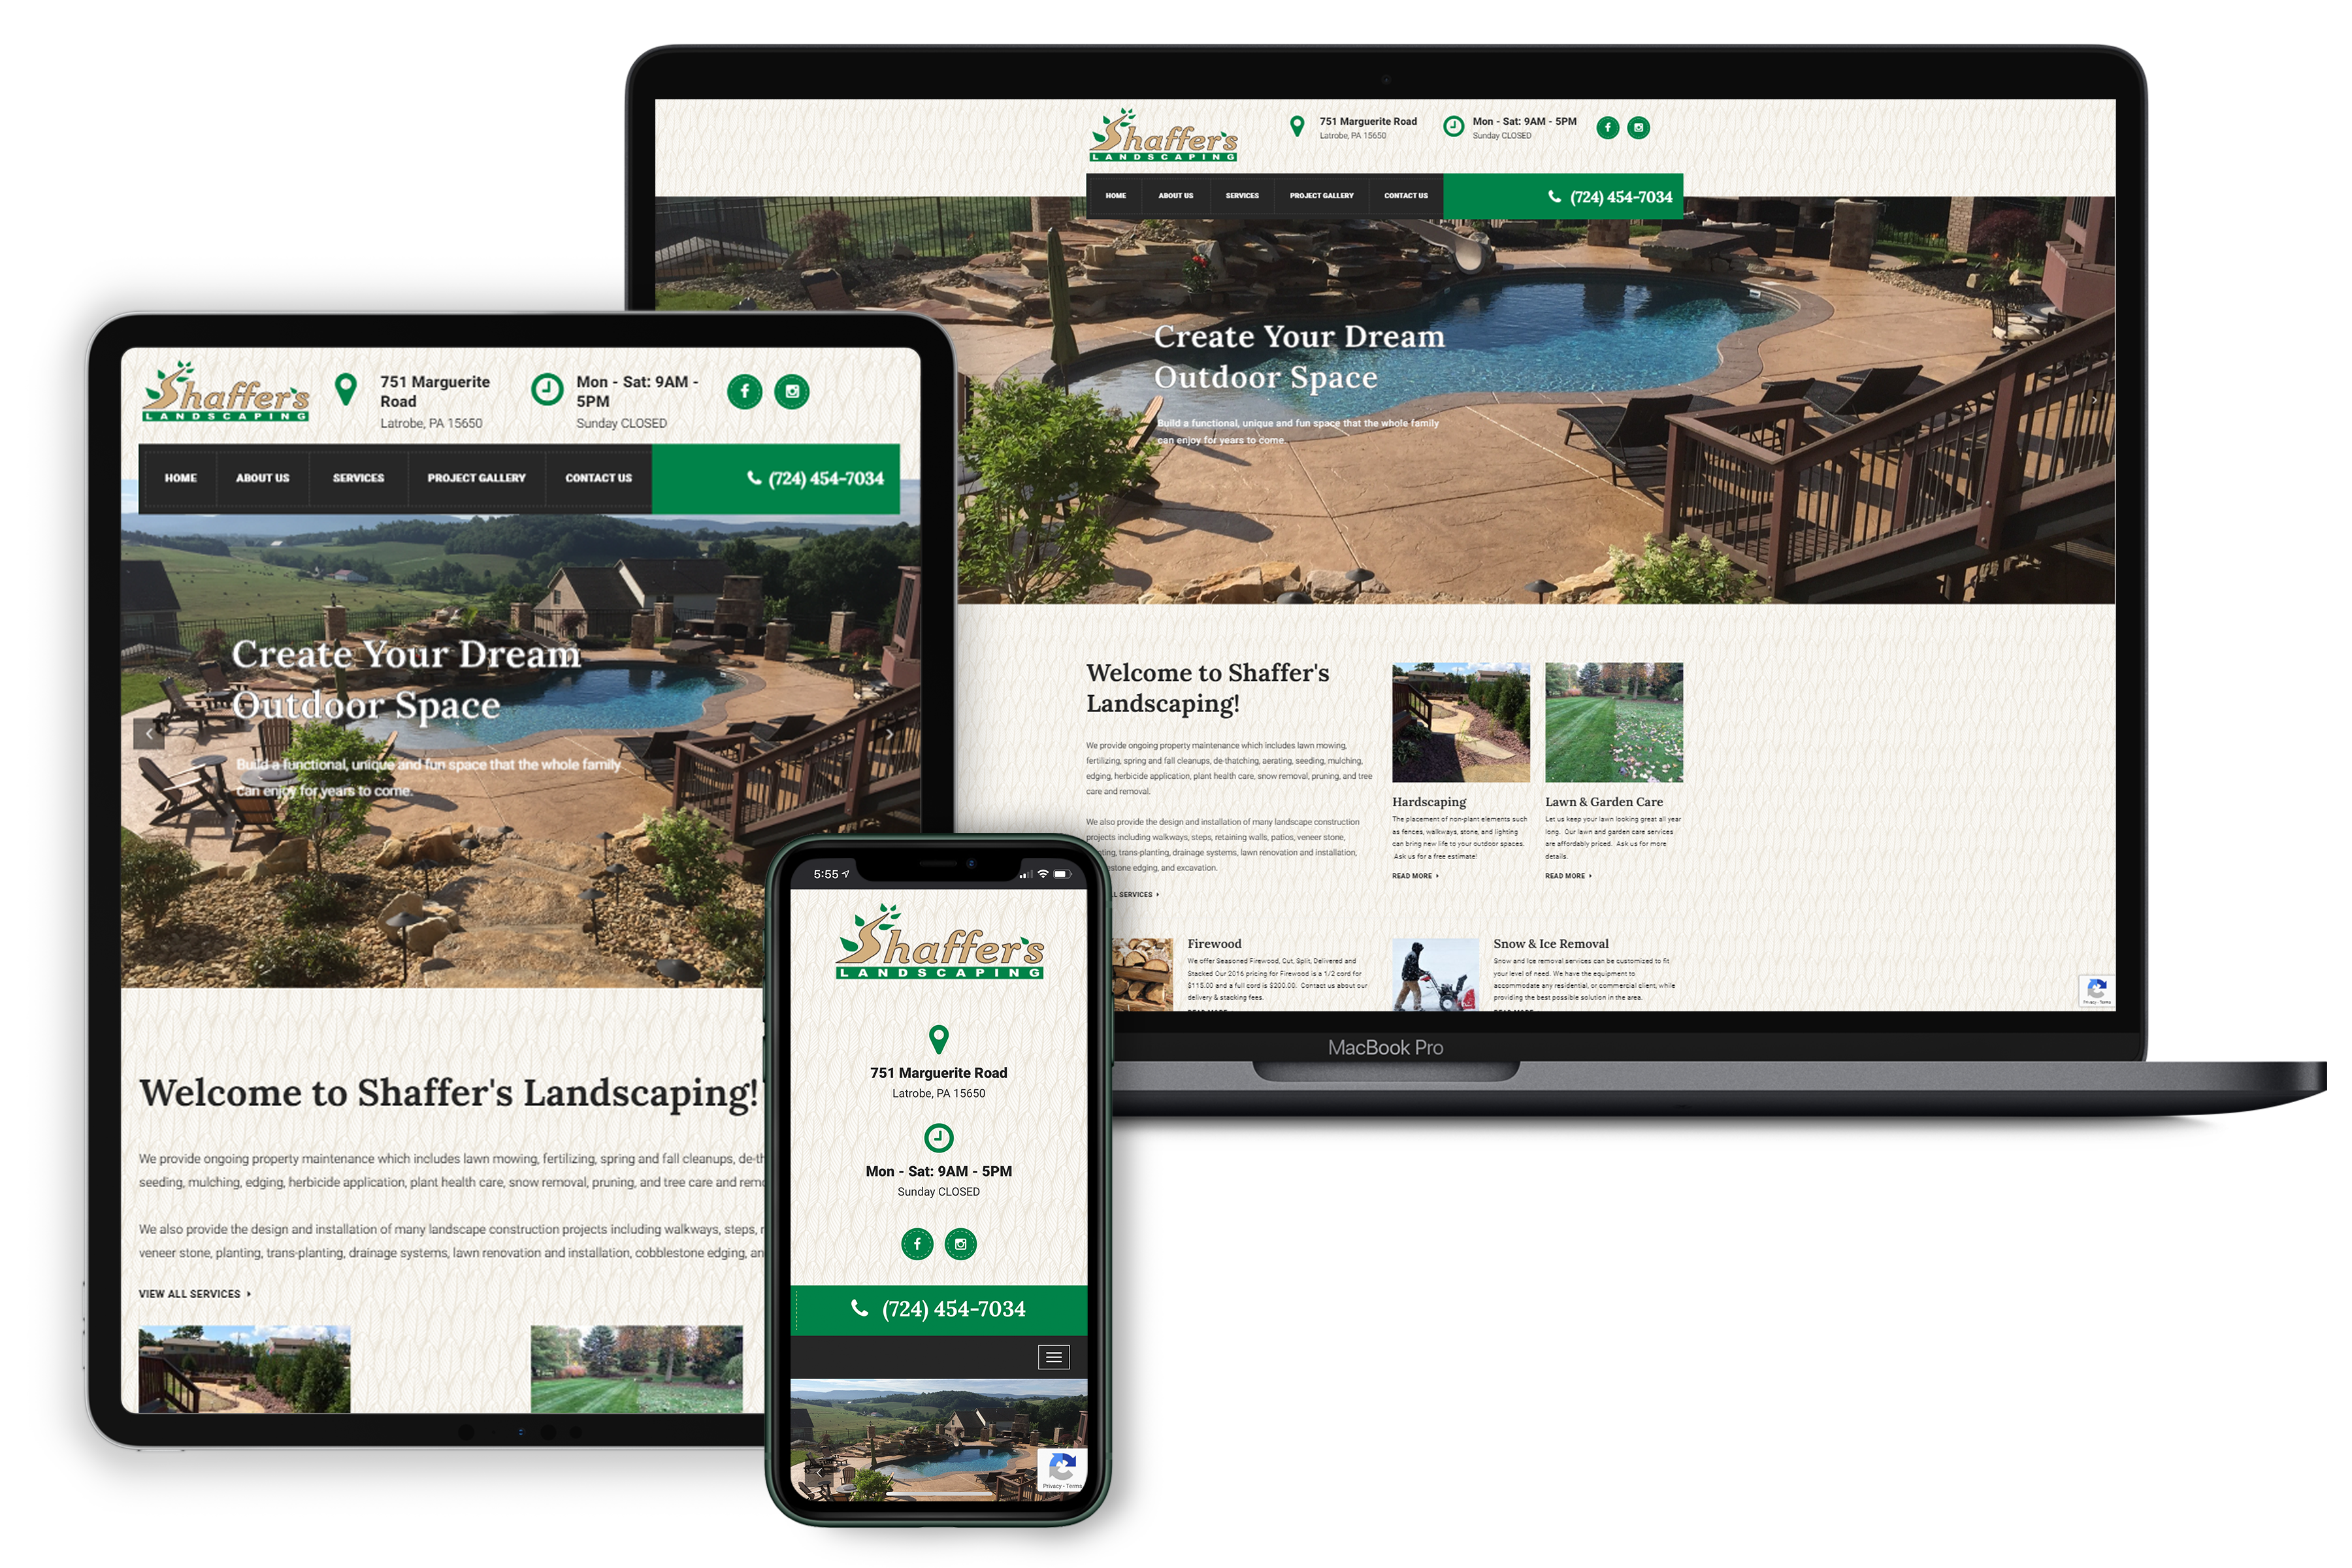 shaffer's landscaping website showcase